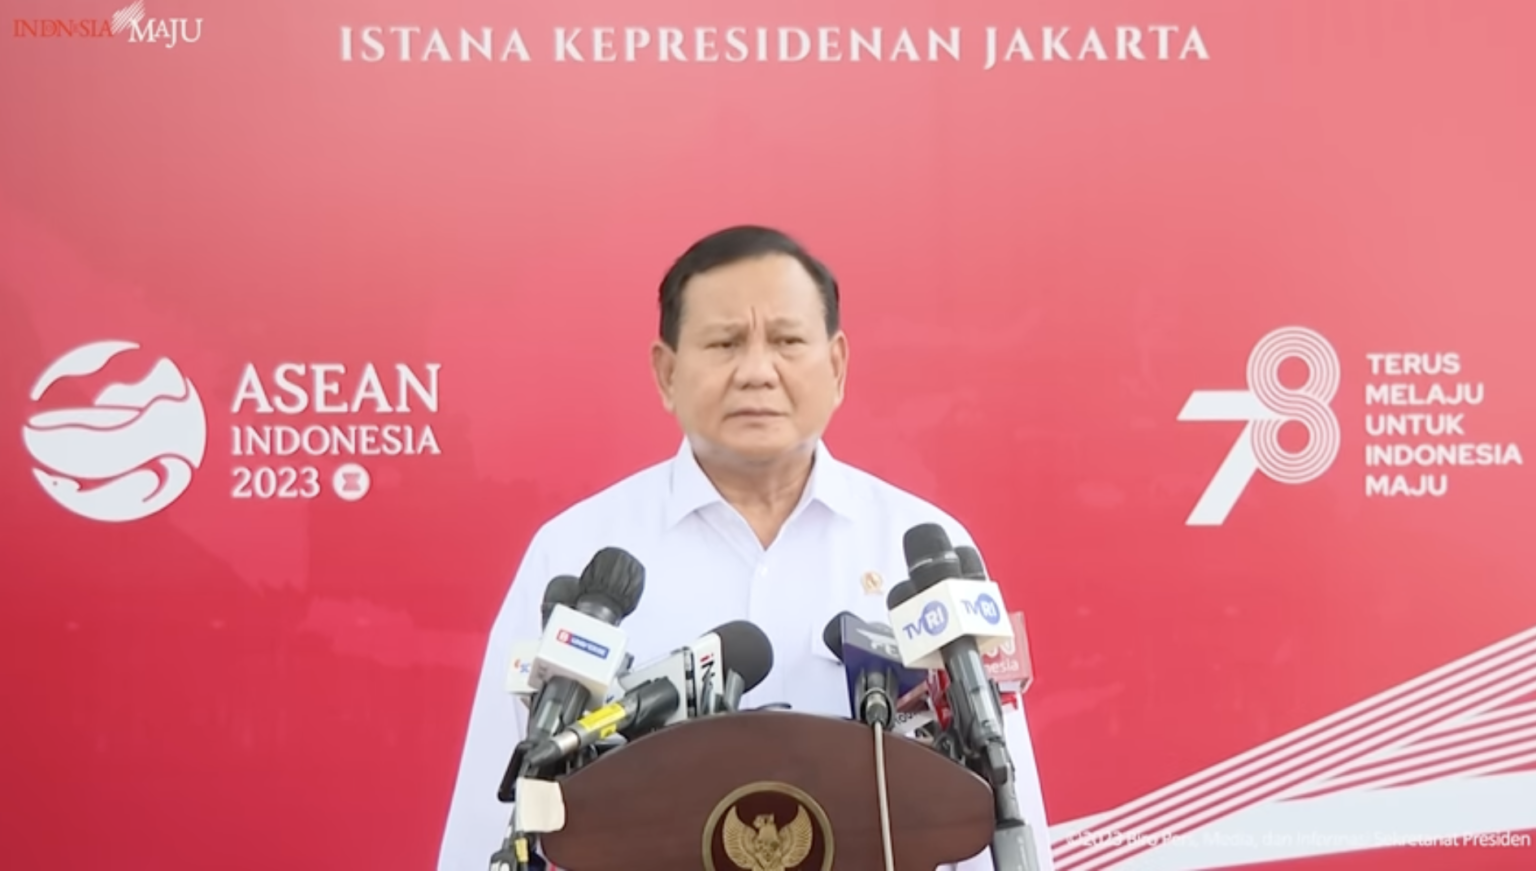 Menteri Pertahanan Prabowo Subianto sampaikan peningkatan produksi pesawat CN 325 dan telah dipesan 100 unit oleh negara lain.